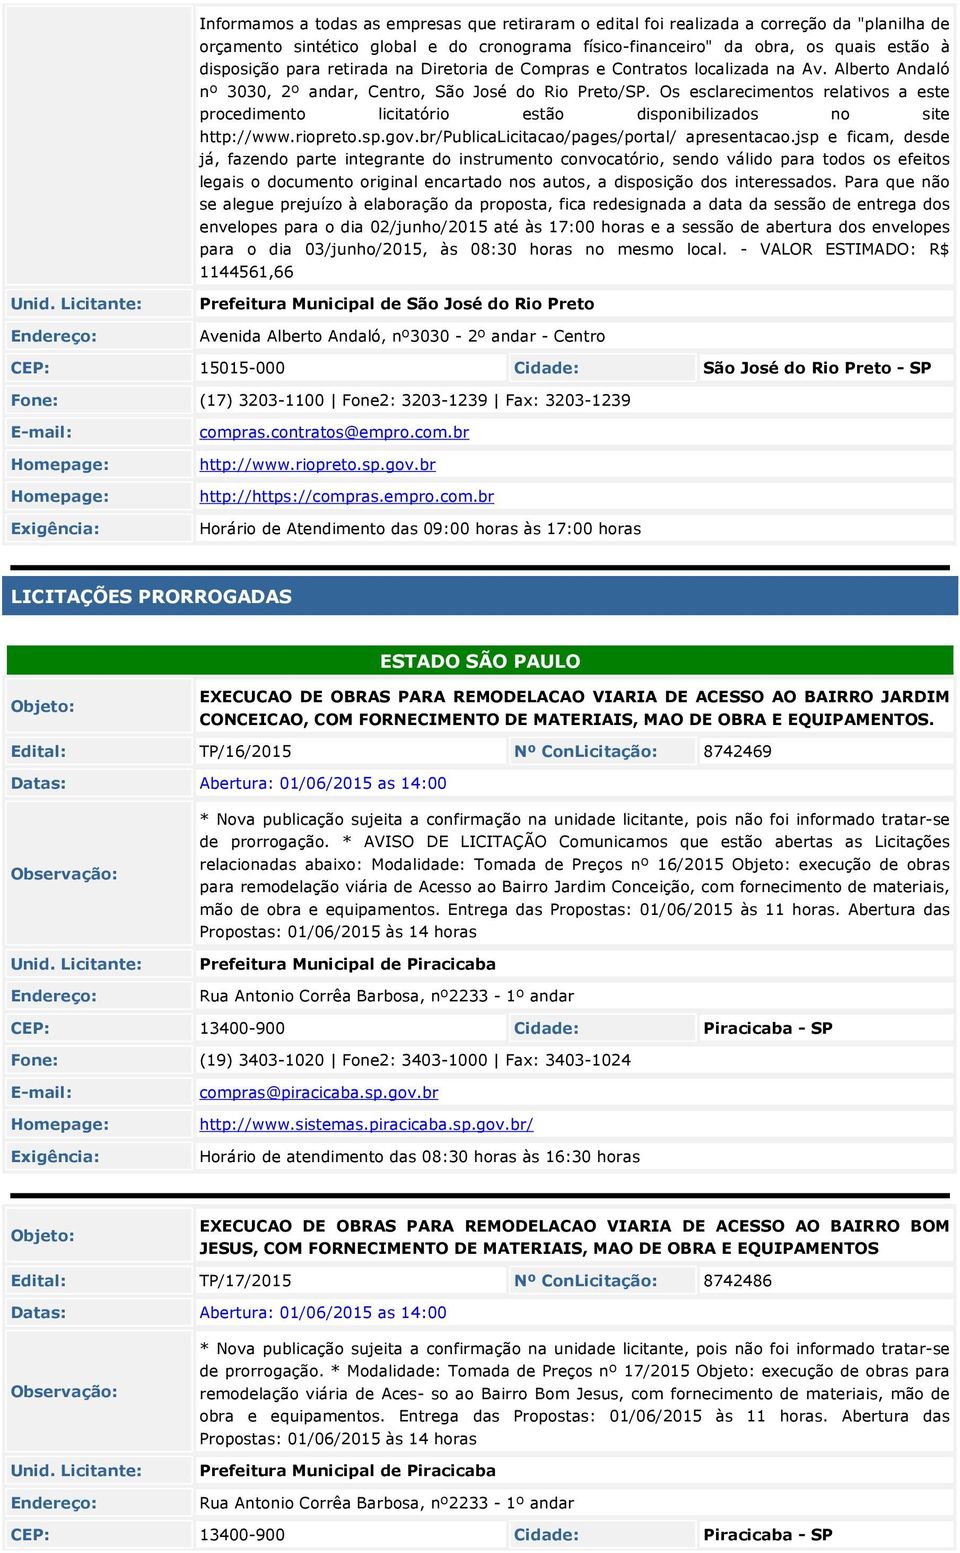 Os esclarecimentos relativos a este procedimento licitatório estão disponibilizados no site http://www.riopreto.sp.gov.br/publicalicitacao/pages/portal/ apresentacao.